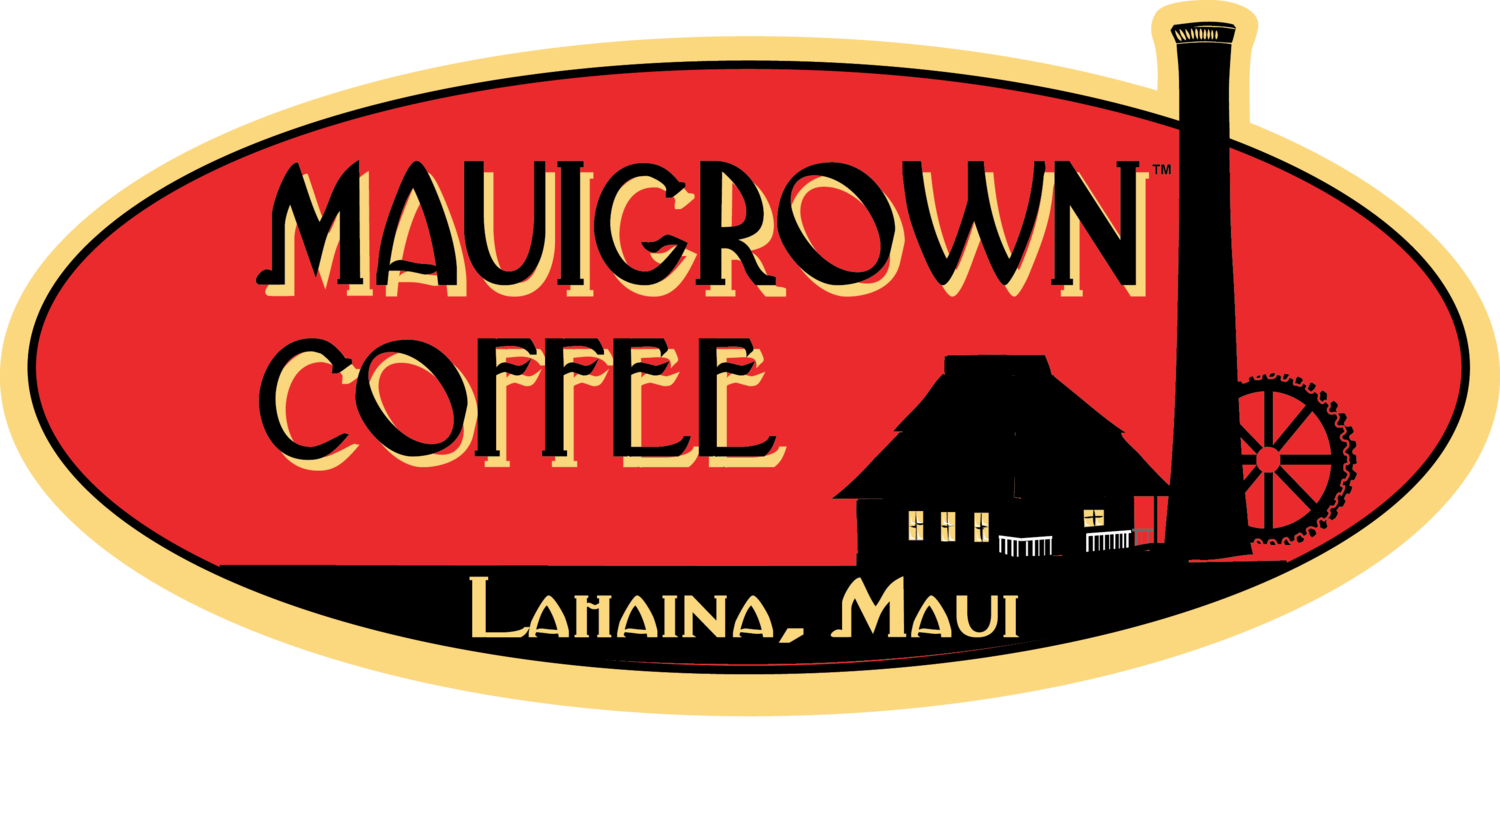 MauiGrown™ Coffee